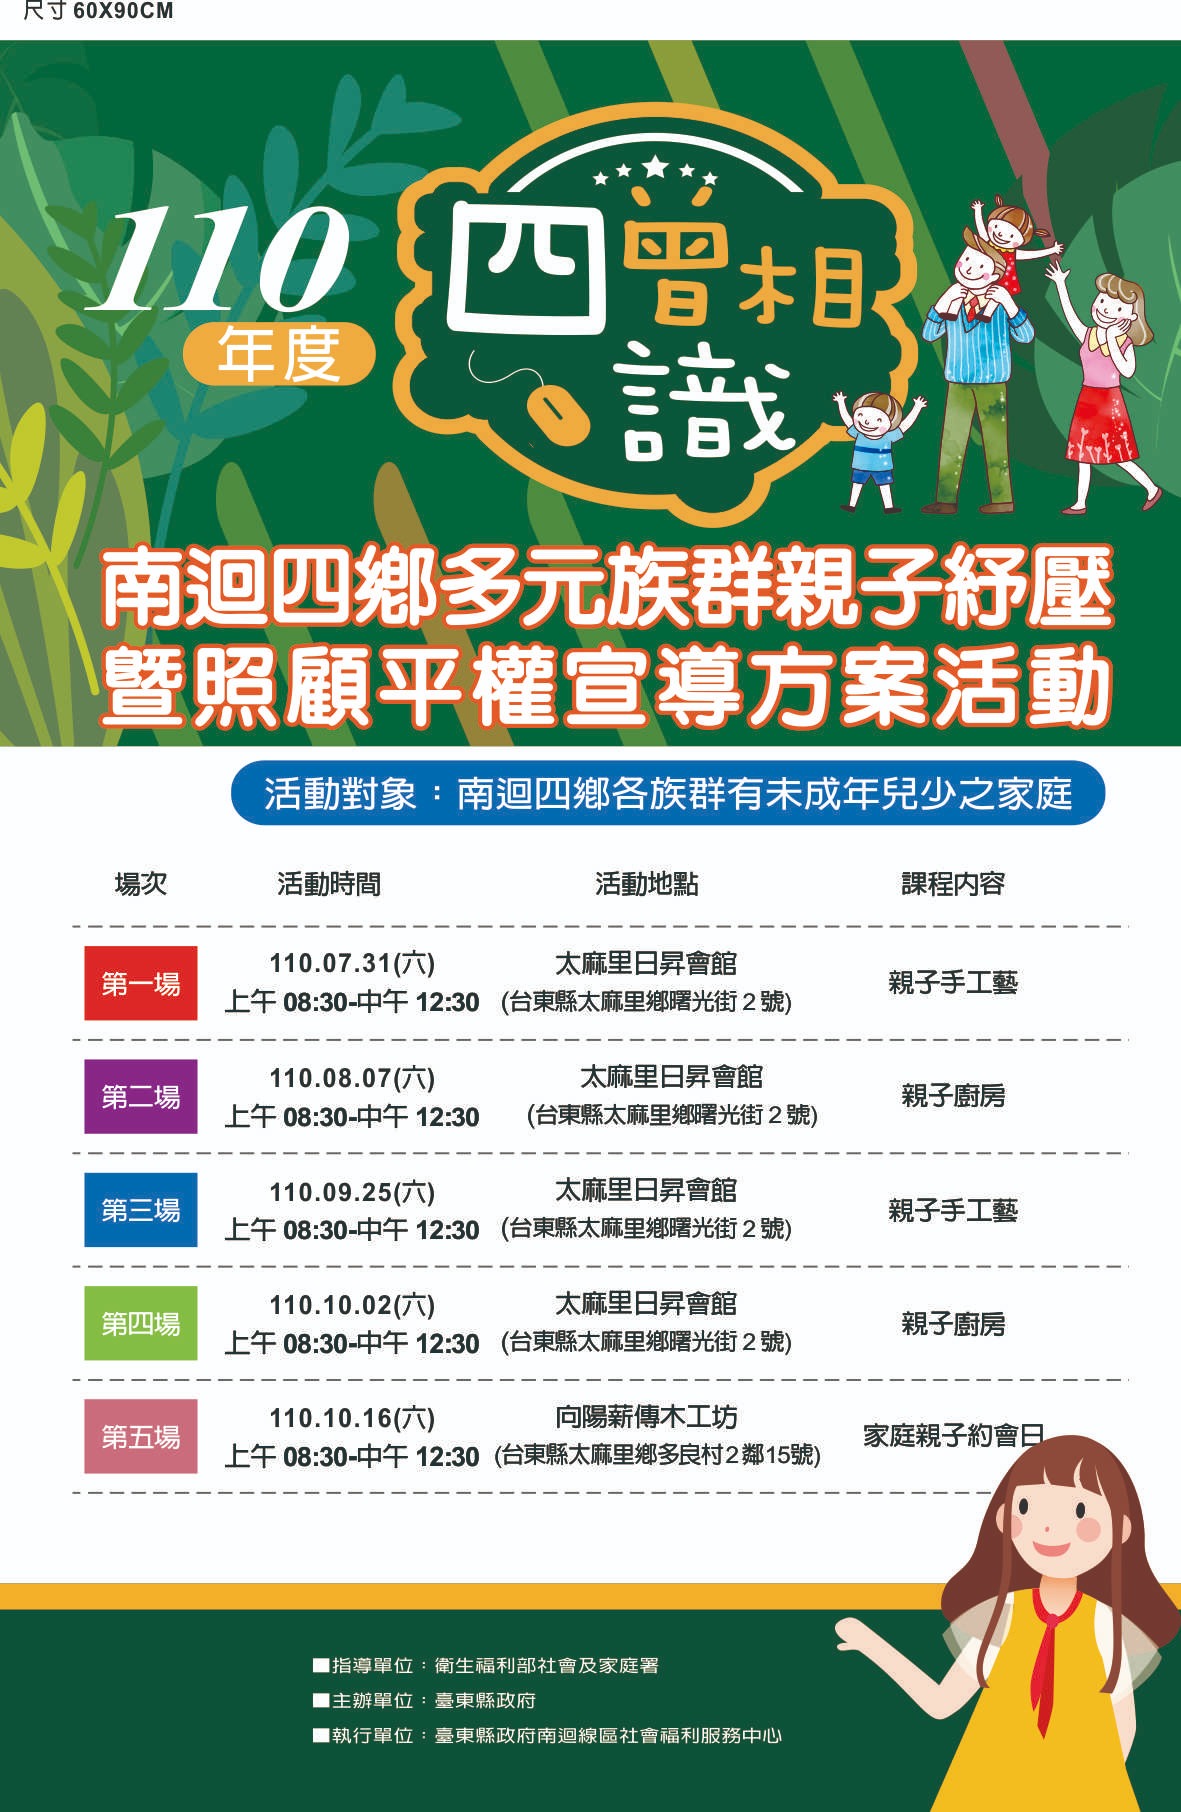 "Pertolongan Orang Tua-Anak dan Advokasi untuk Persamaan Hak" membantu penduduk baru mengintegrasi ke dalam masyarakat Taiwan. Sumber: Diambil dari Kantor Sosial Taitung